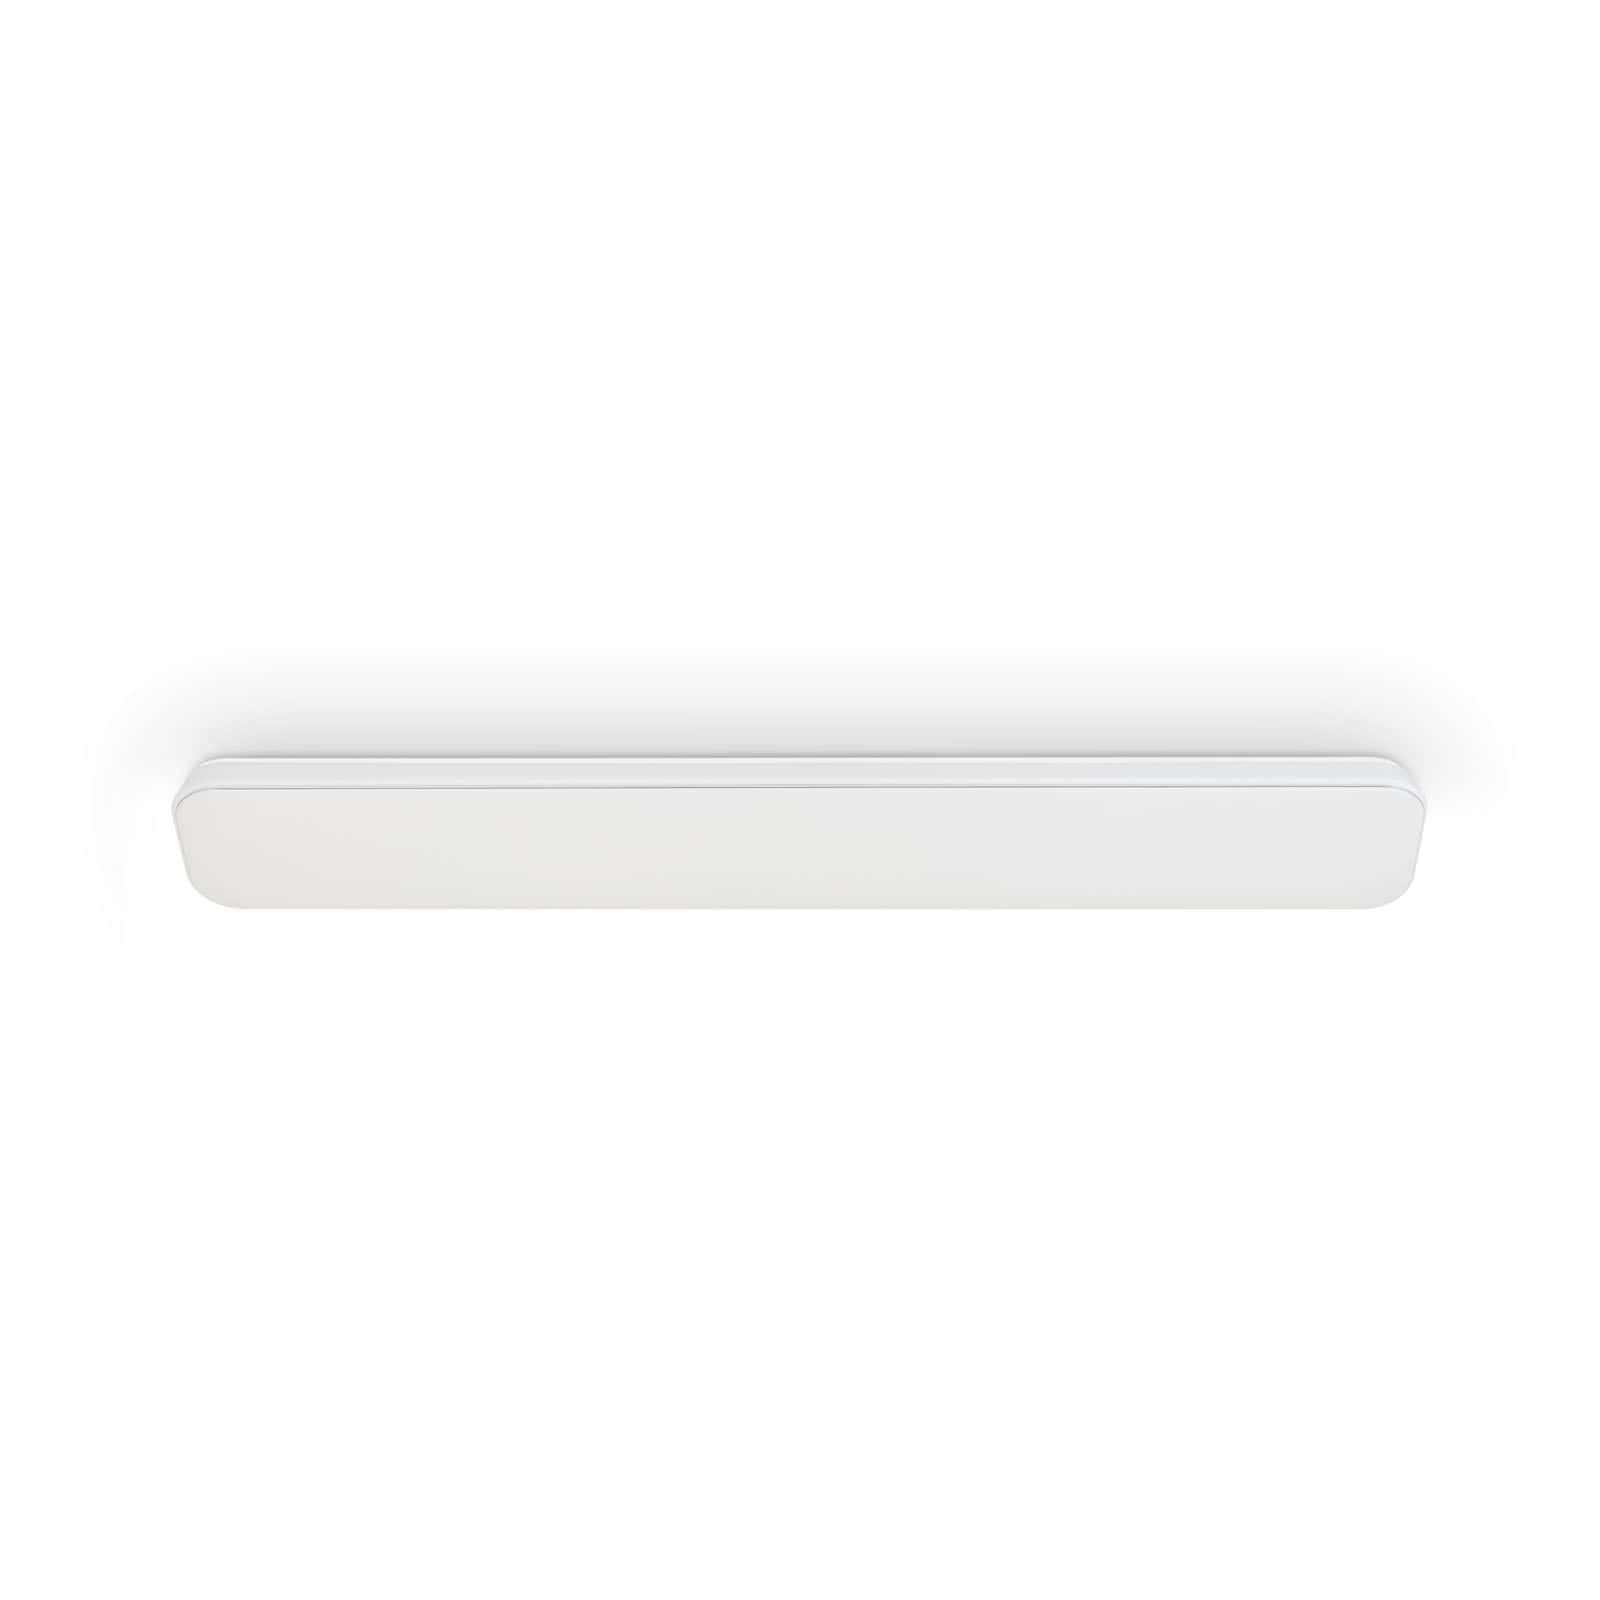 TELEFUNKEN LED Ceiling light 115,5 cm 1x 48W 5100lm white